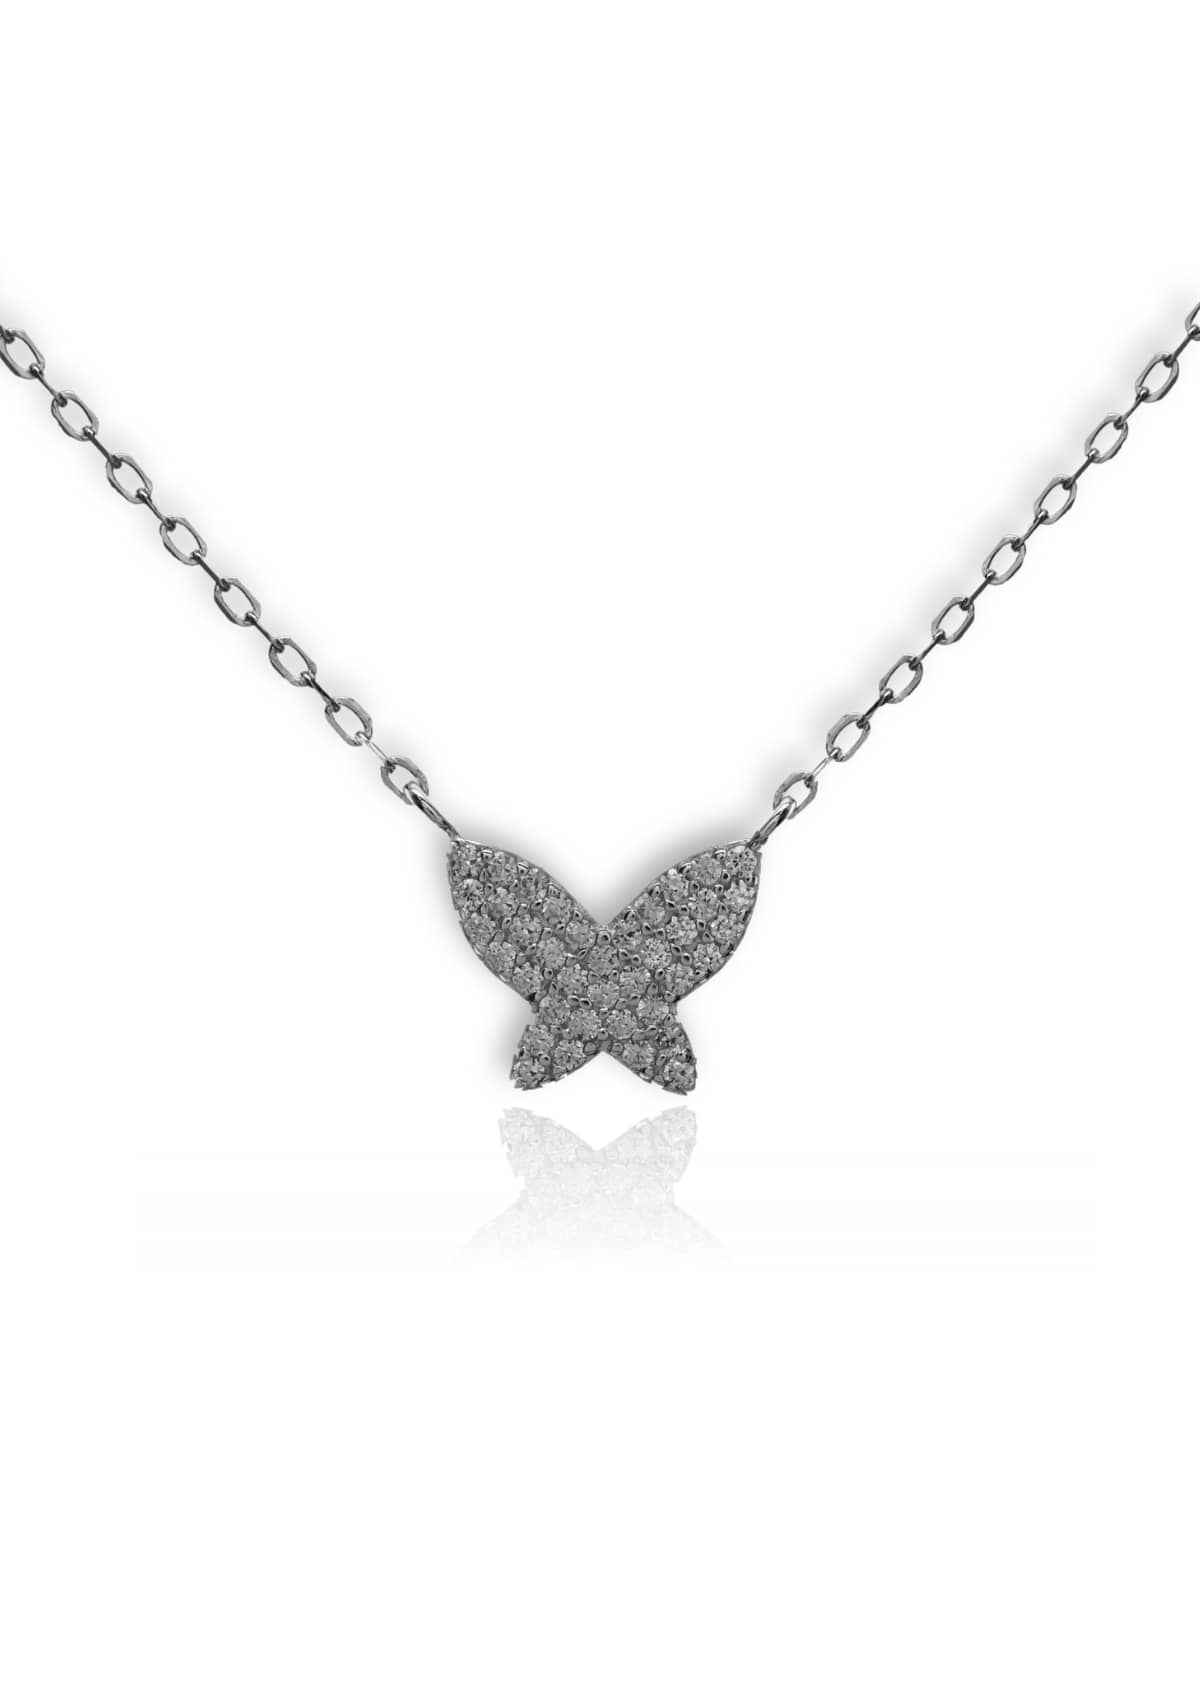 Silver Pave Butterfly Necklace -Be-Je Designs- Ruby Jane-